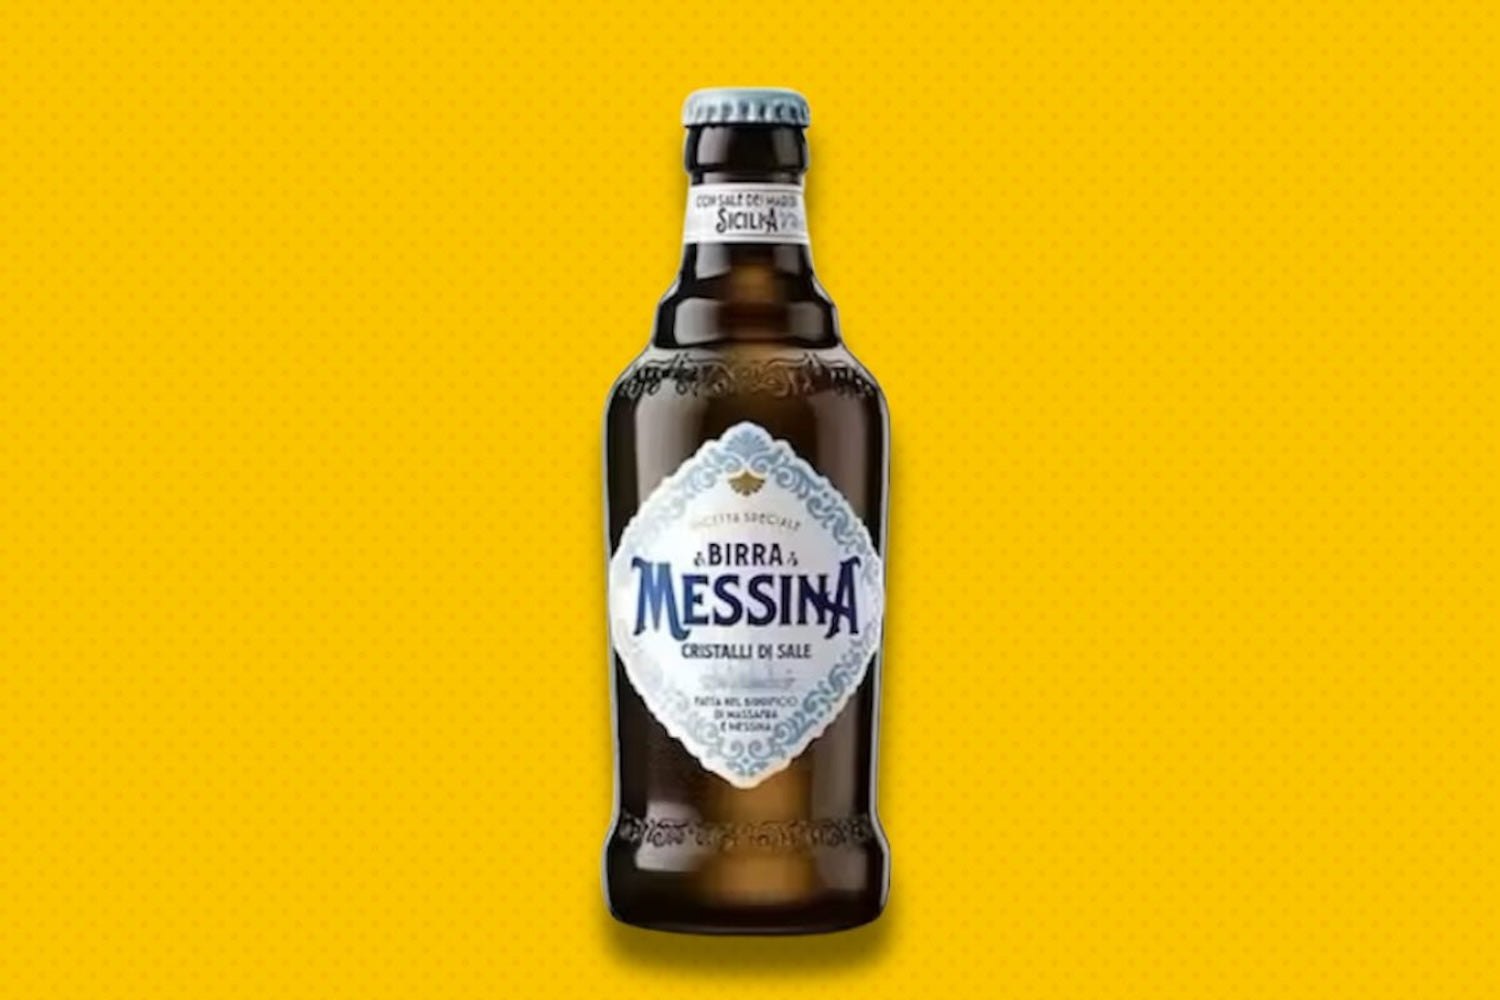 Birra Messina Cristalli di Sale 33 cl (vol. 5%)